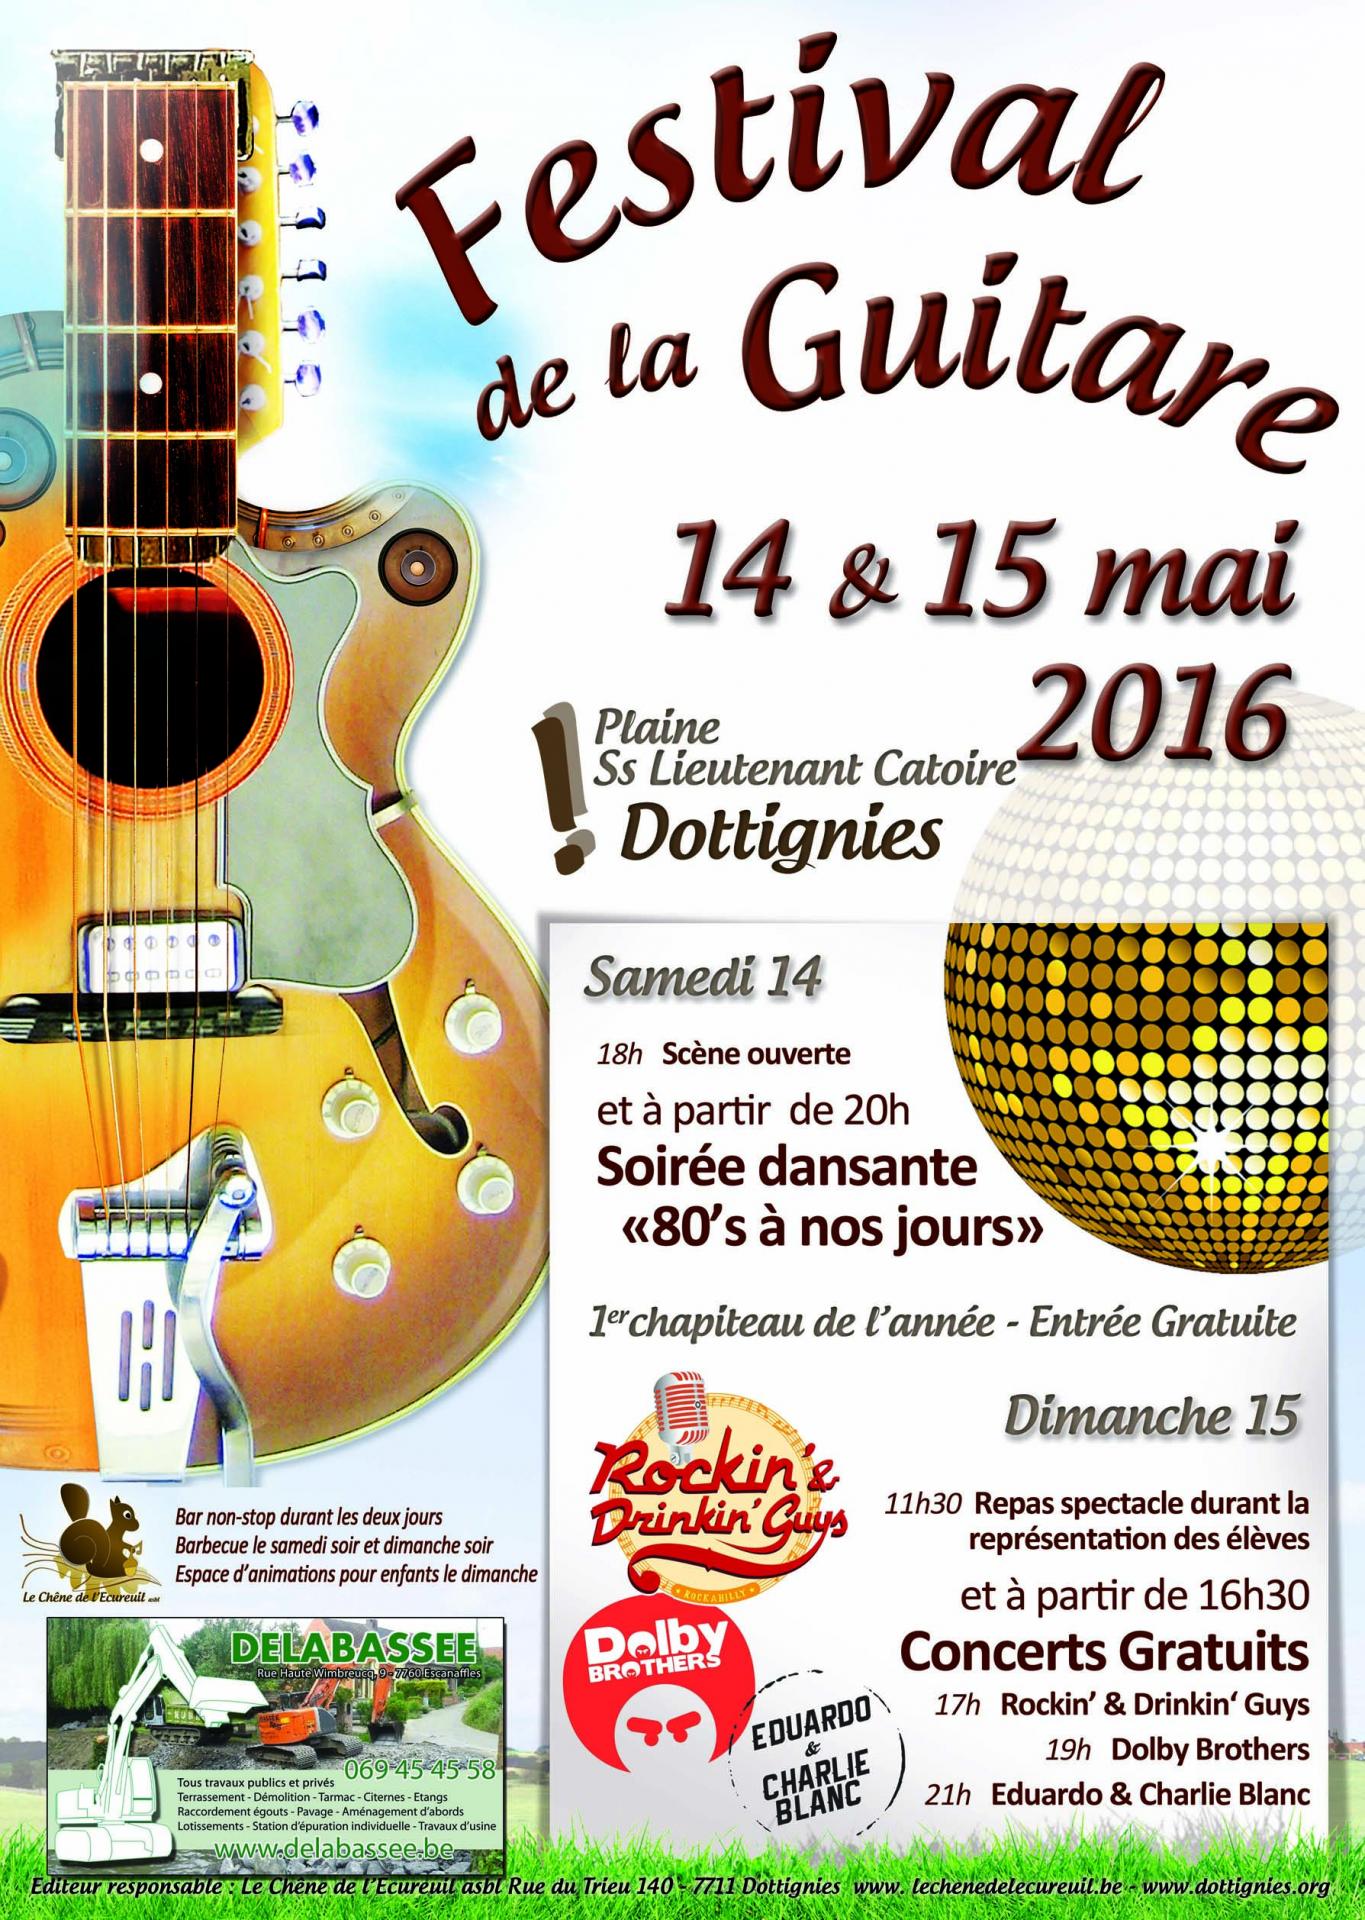 Festival de la Guitare - Dottignies